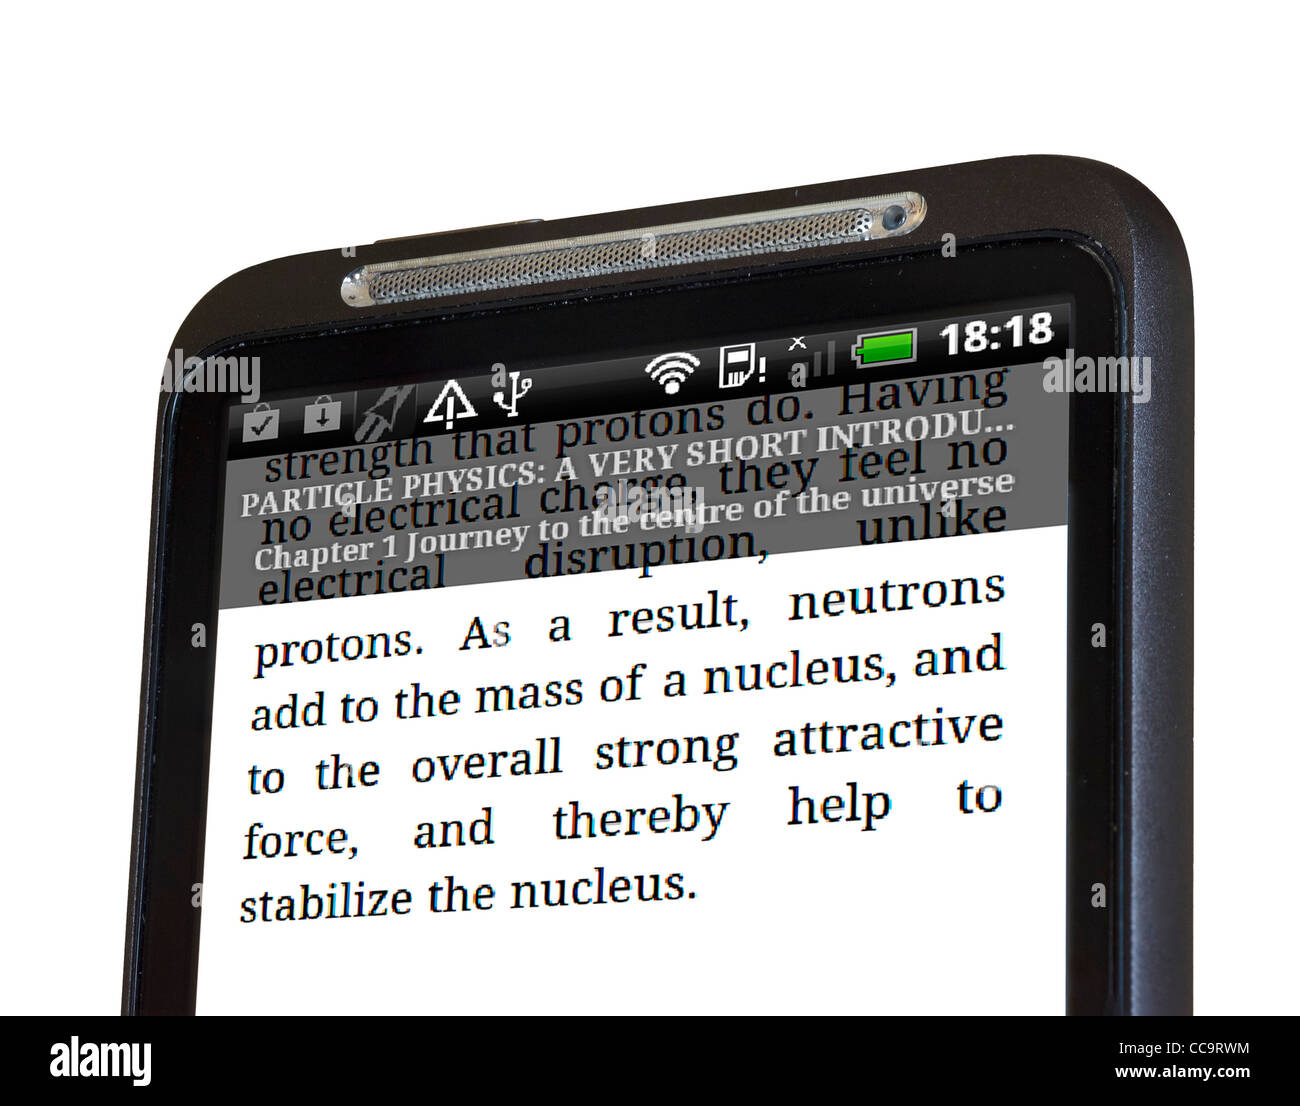 La lecture d'un livre sur l'application Kindle sur un smartphone HTC Android Banque D'Images